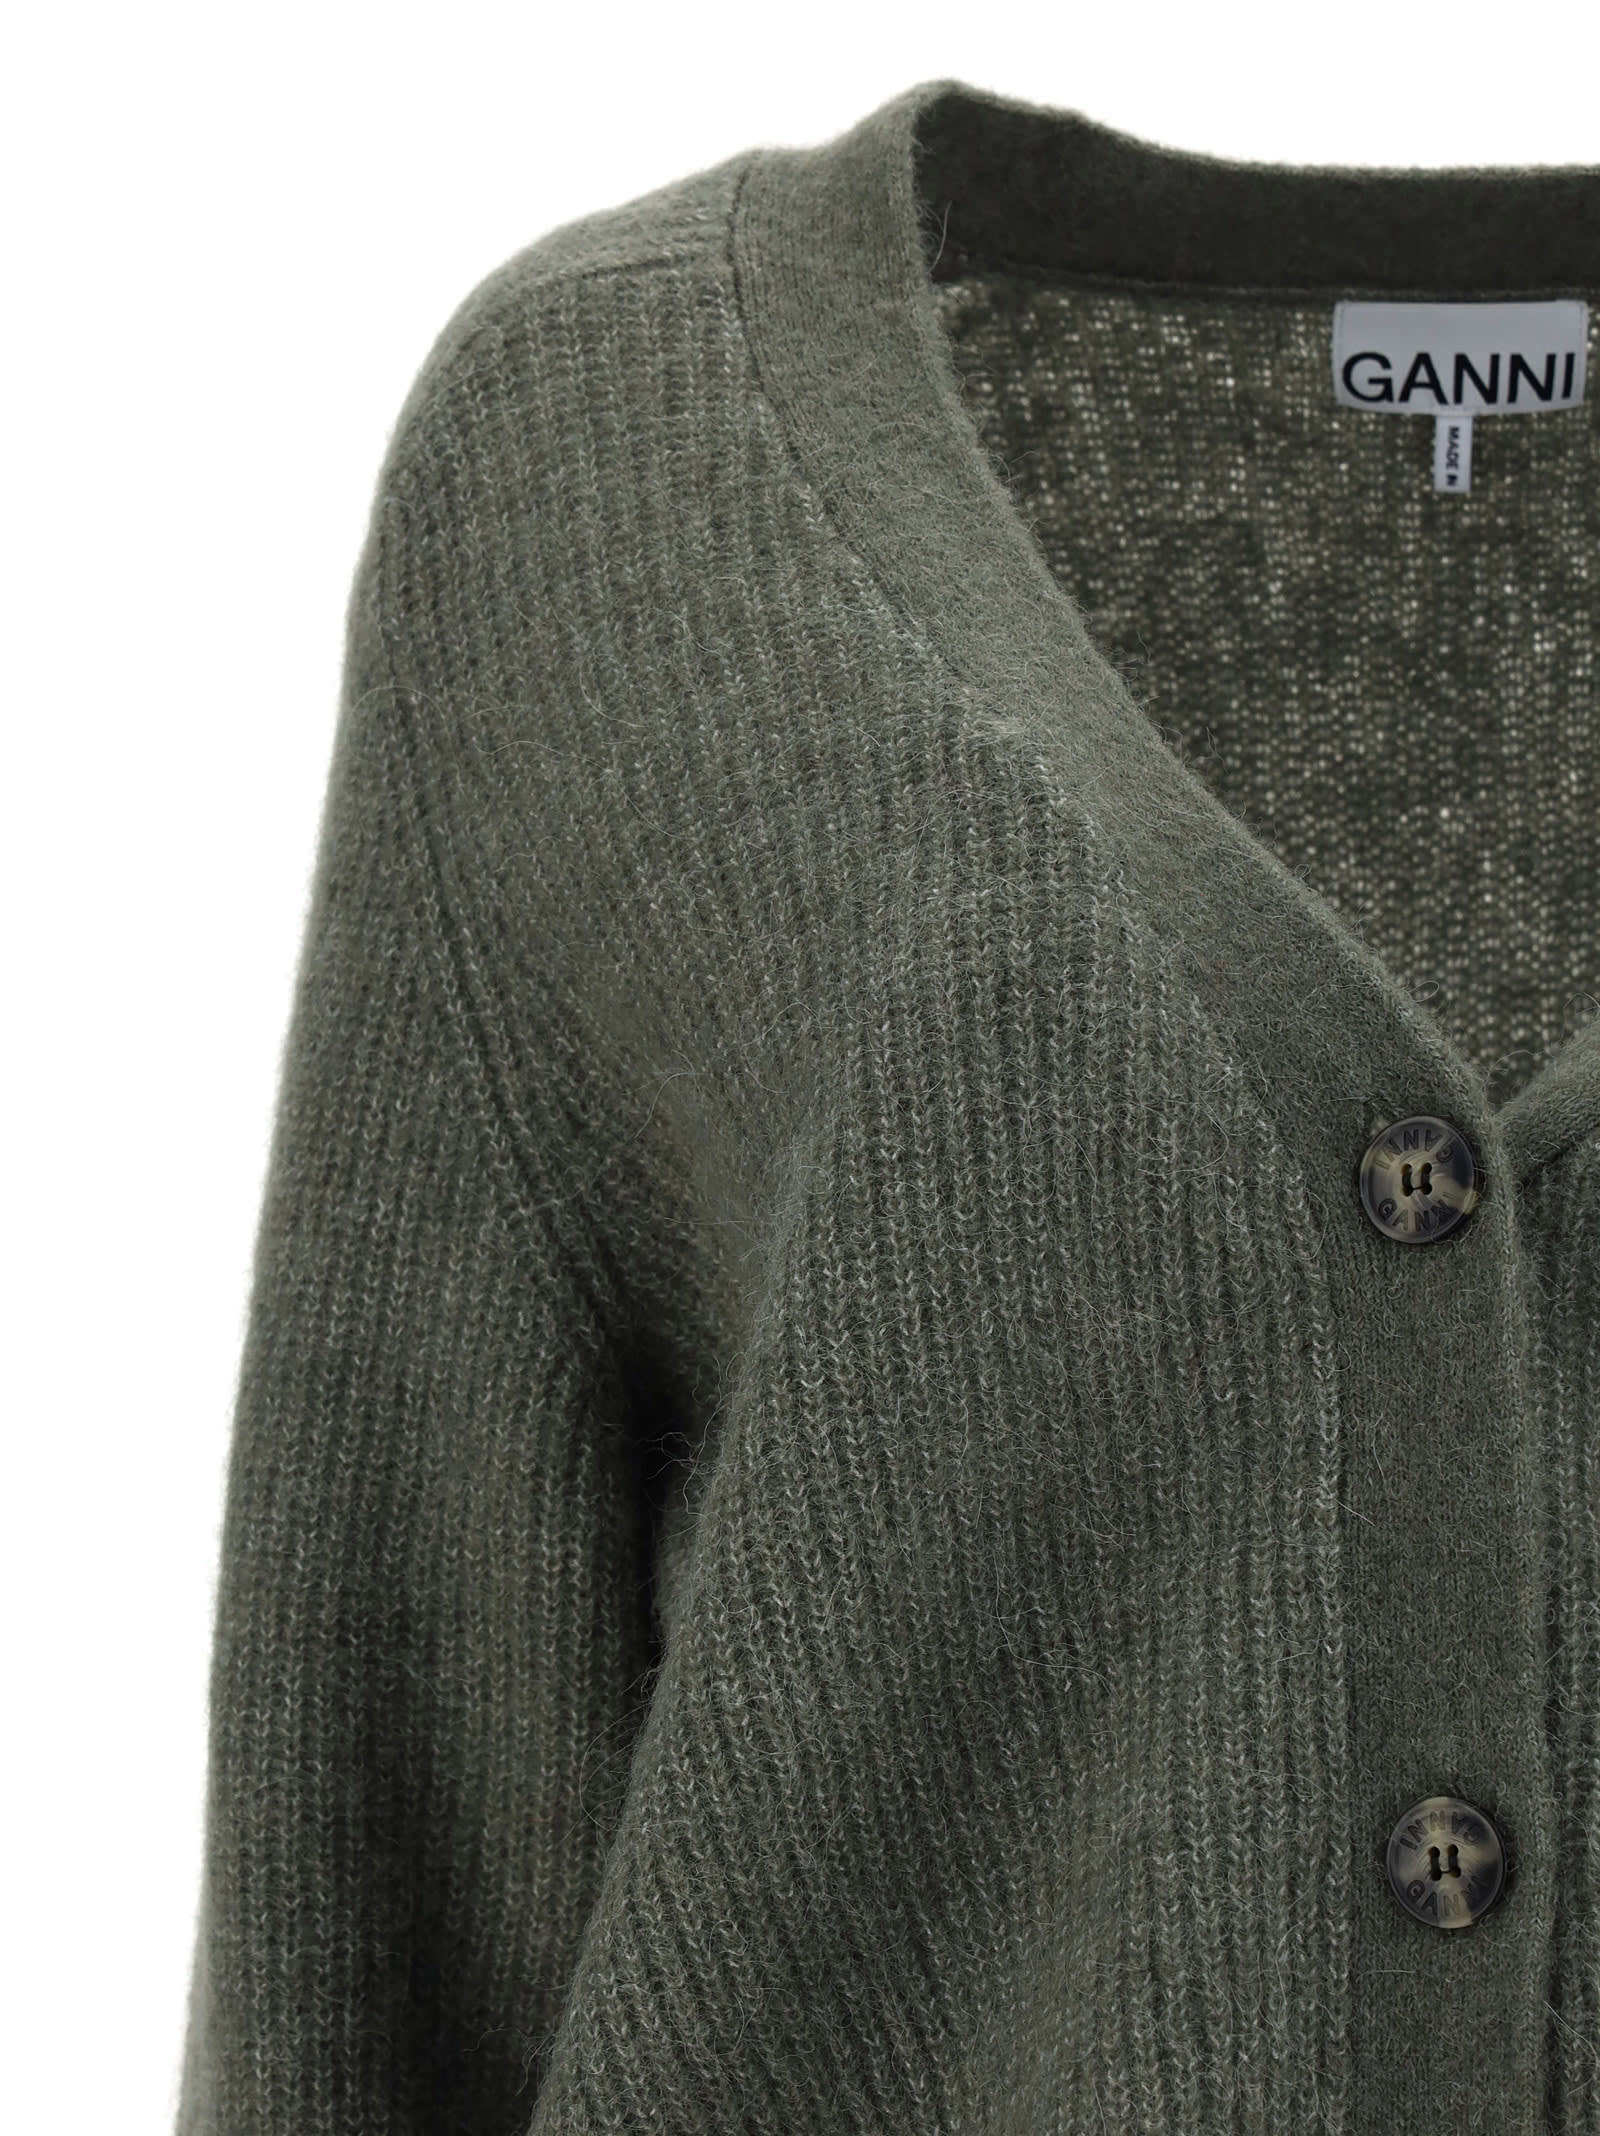 Ganni Cardigan | A SALE